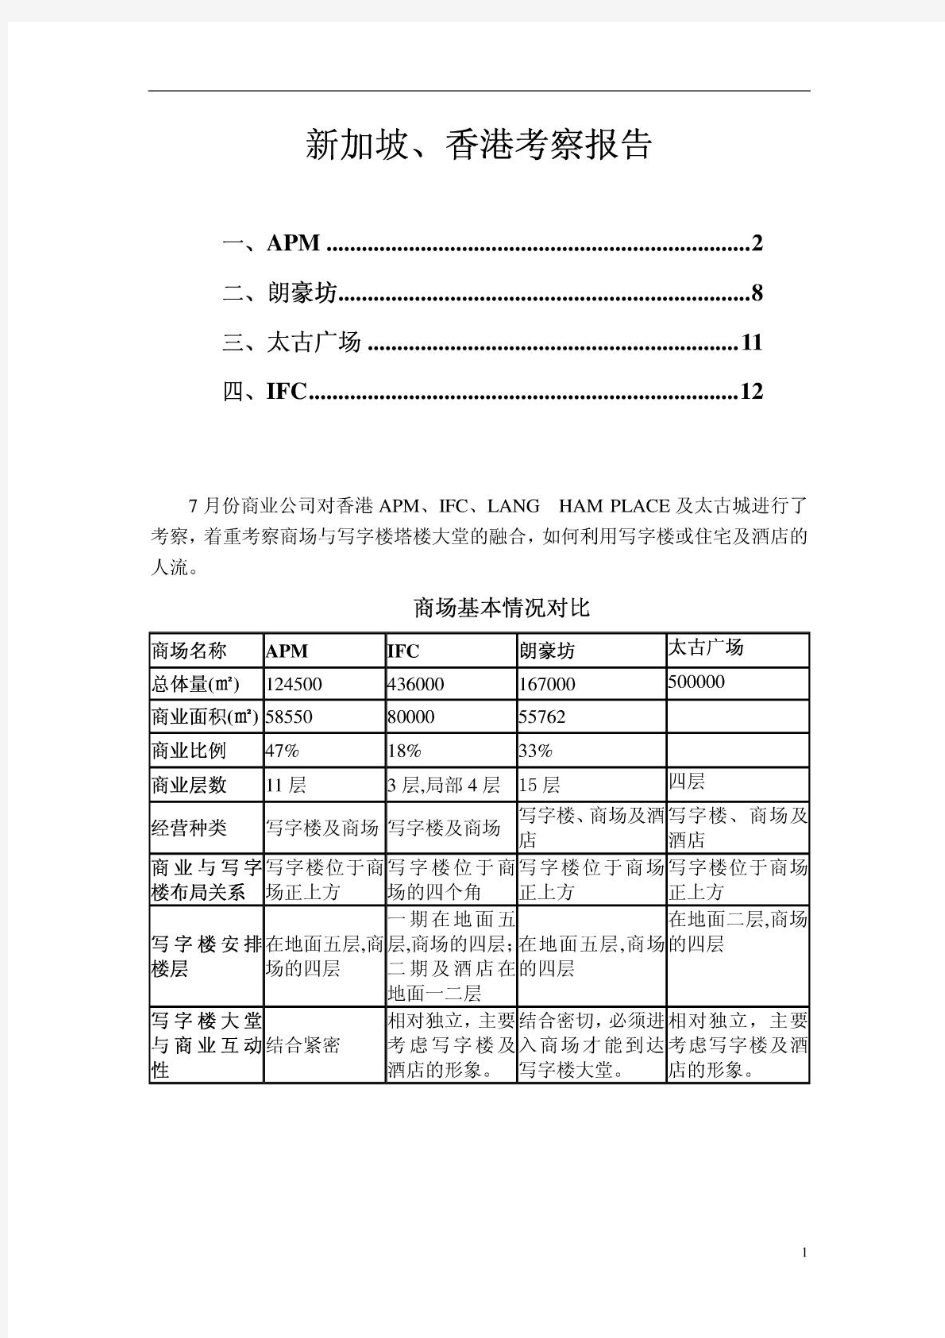 香港apm、朗豪坊、太古广场、ifc考察报告-商业地产案例